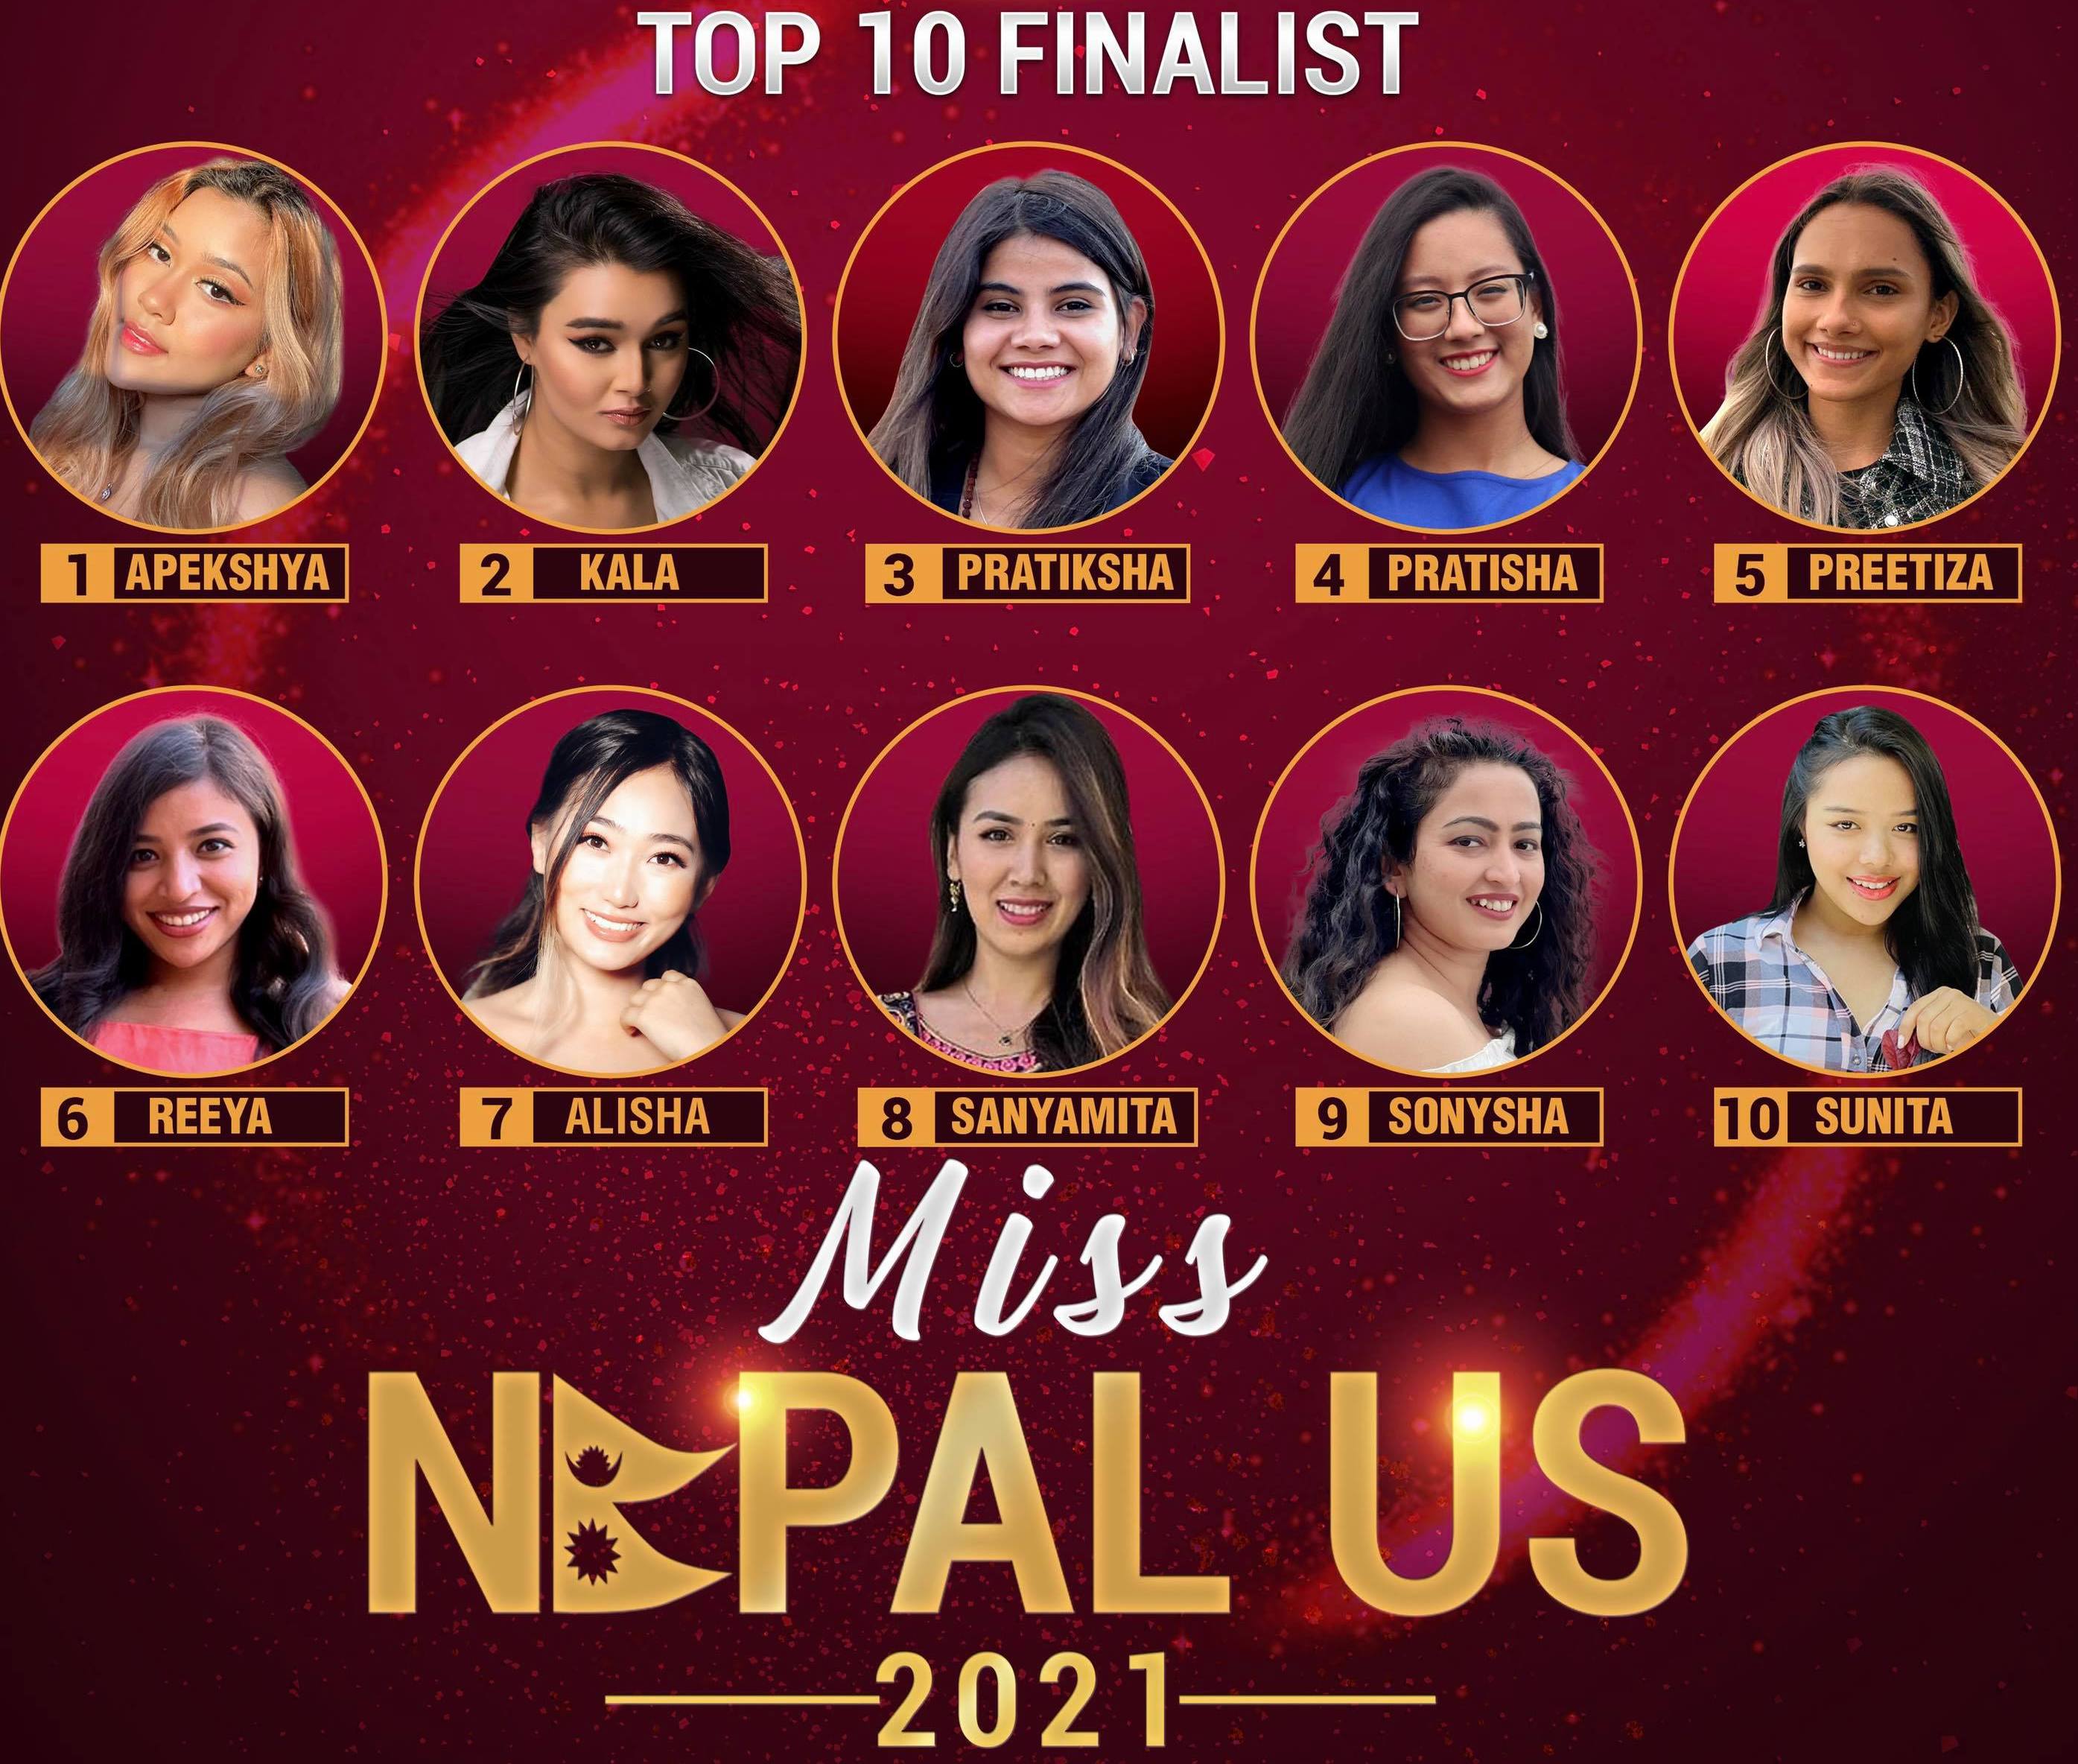 मिस नेपाल युएसमा १० प्रतियोगी